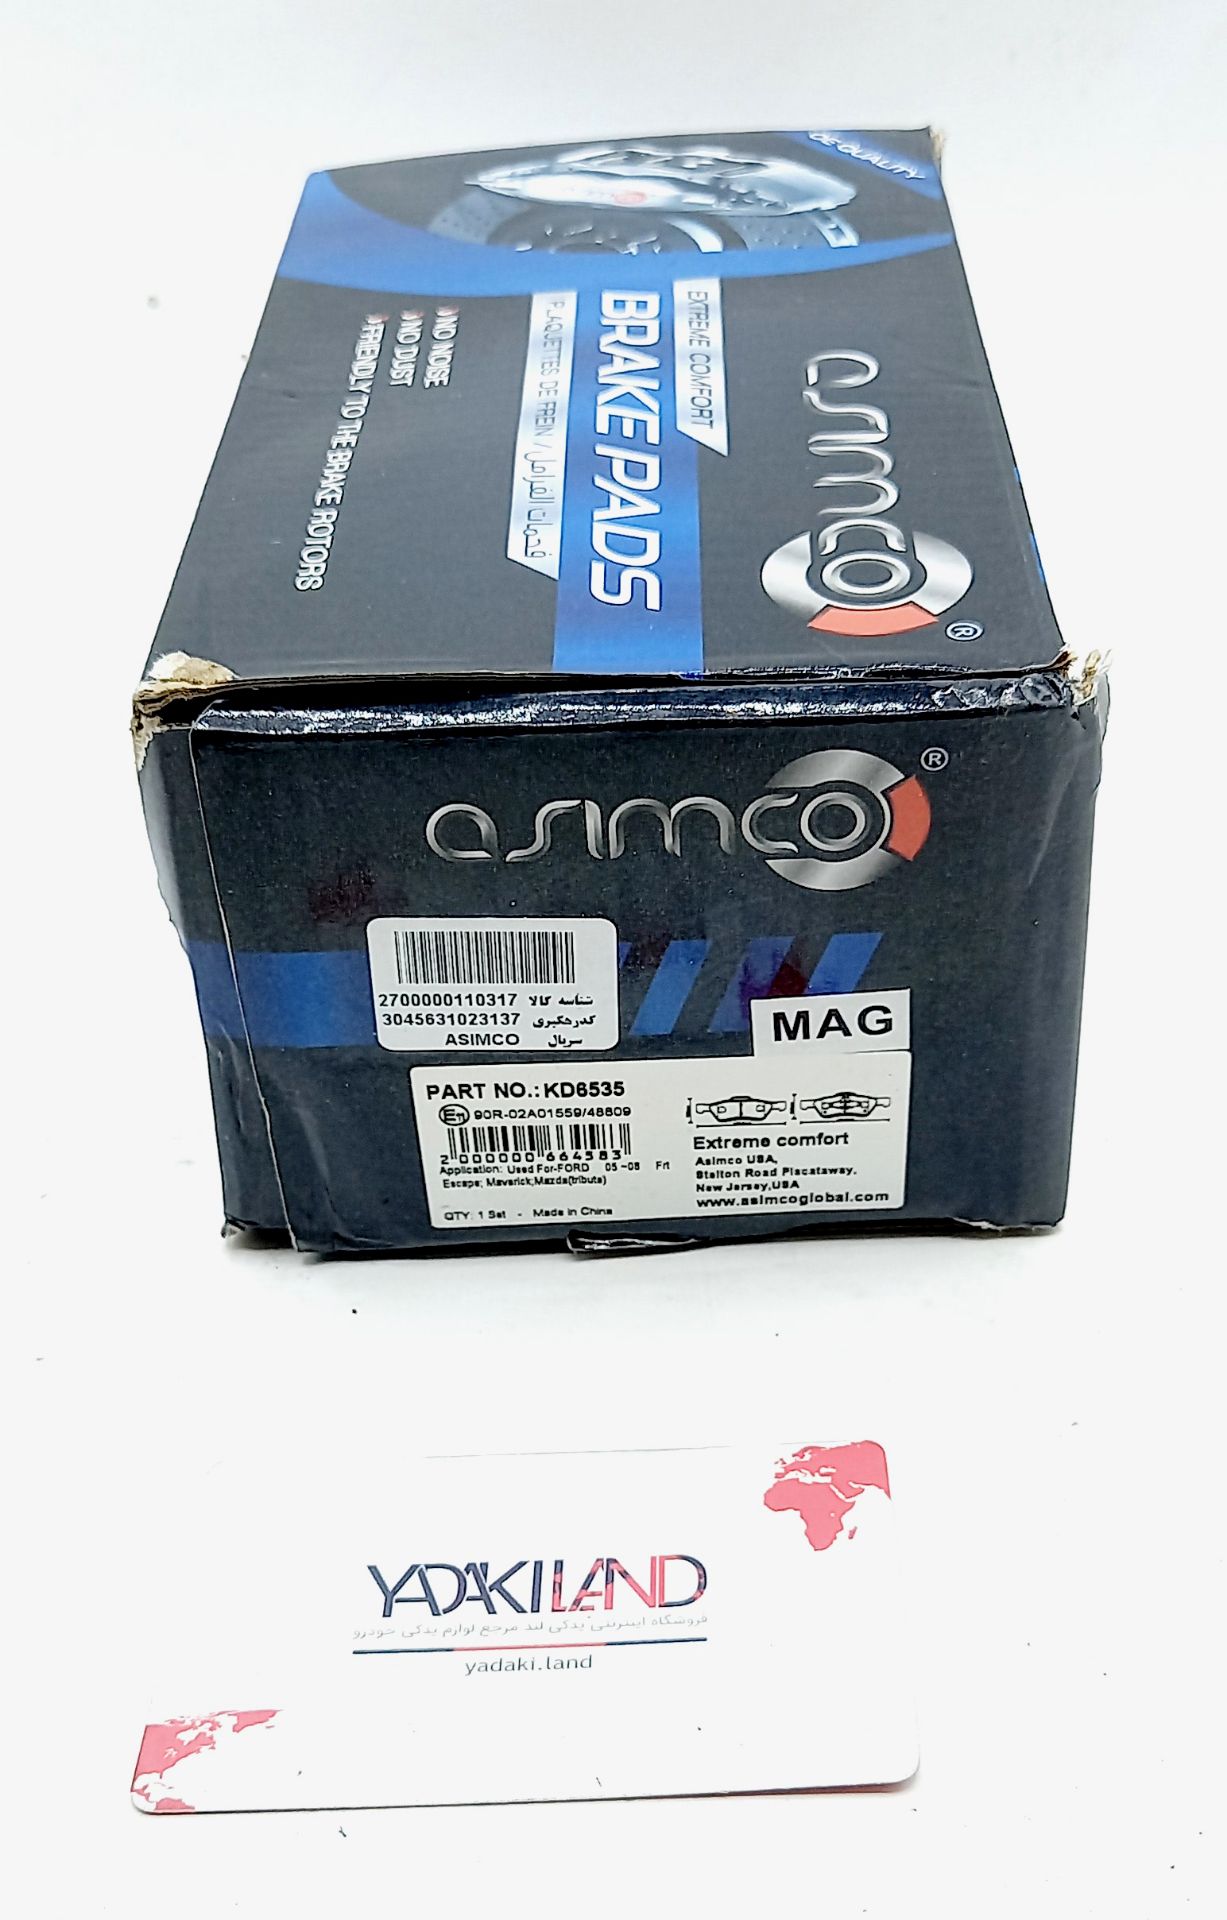 لنت ترمز جلو هایما اس S7 آسیمکو (ASIMCO KD6535) برند امریکایی